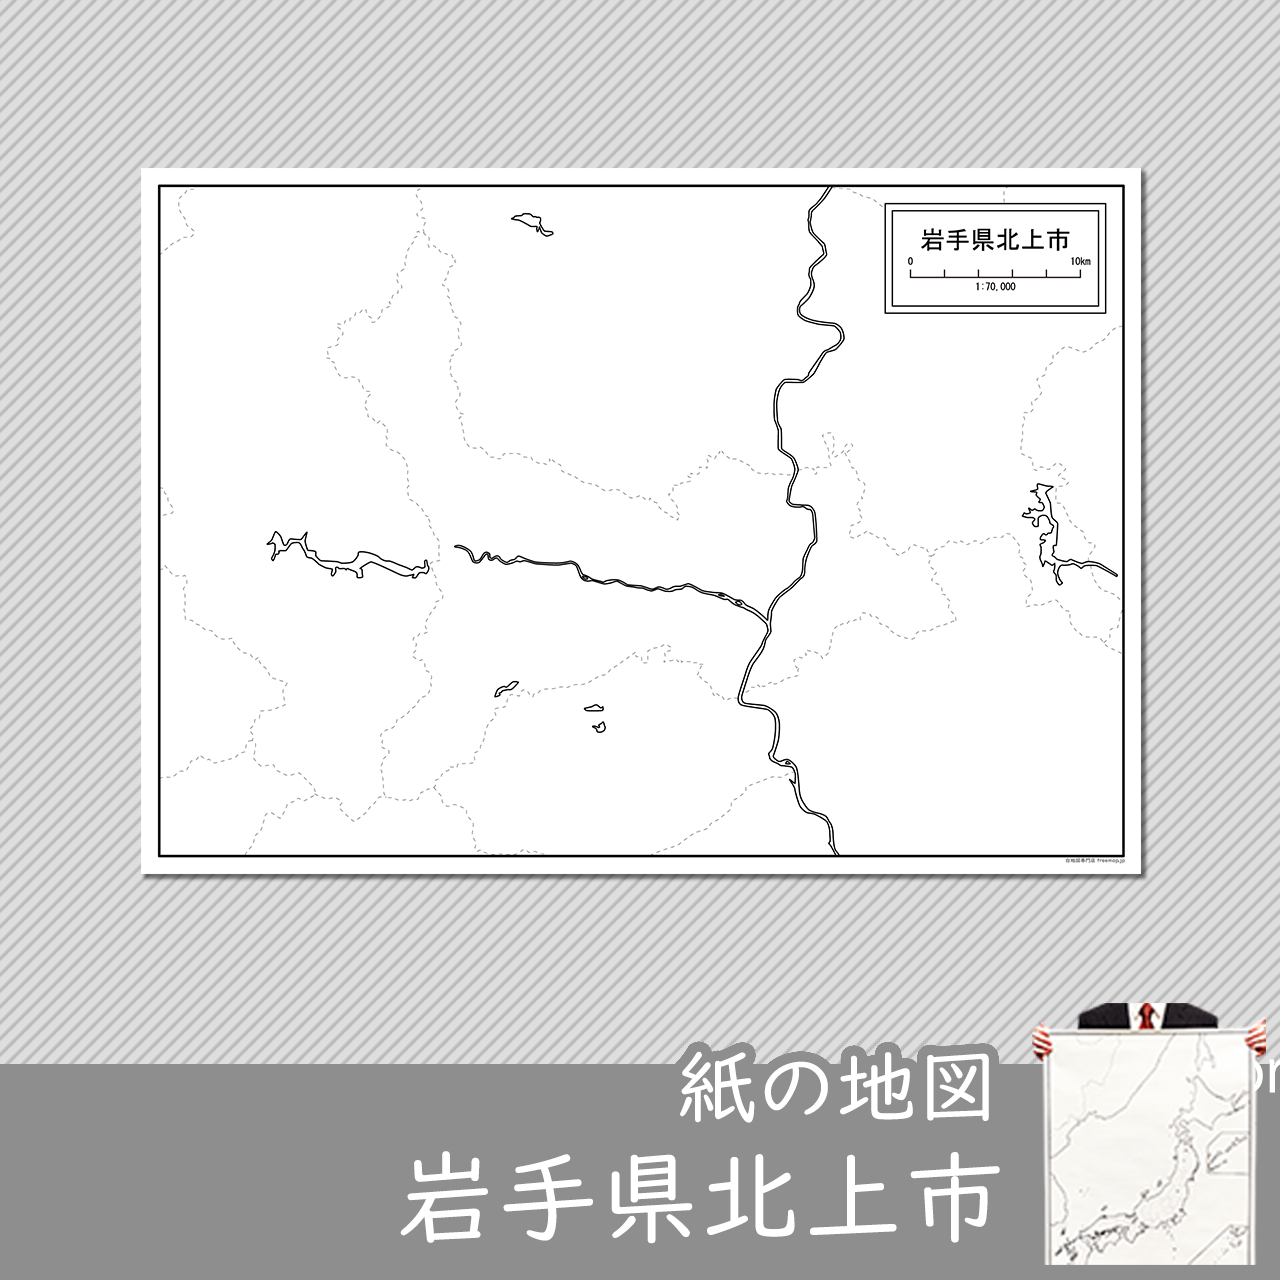 北上市の紙の白地図のサムネイル